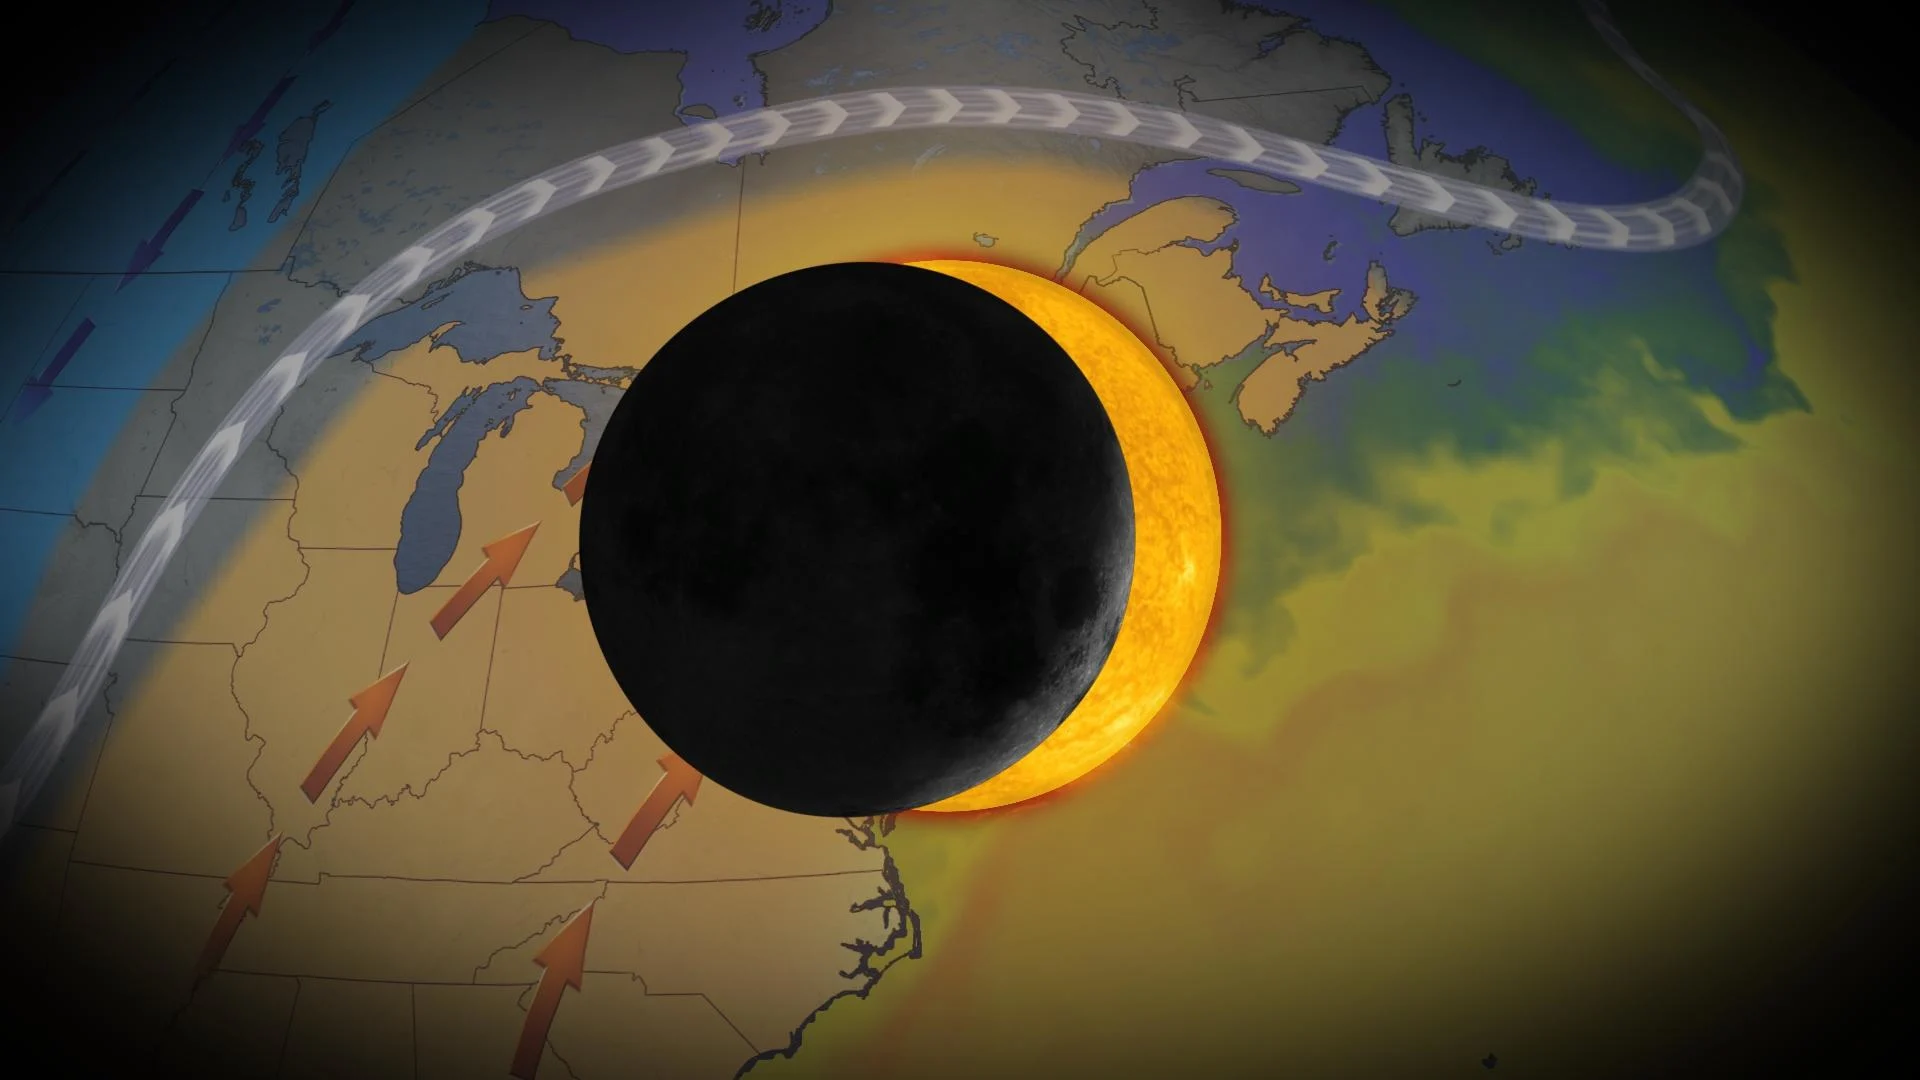 Aperçu : les éléments pourraient être favorables pour l’éclipse totale